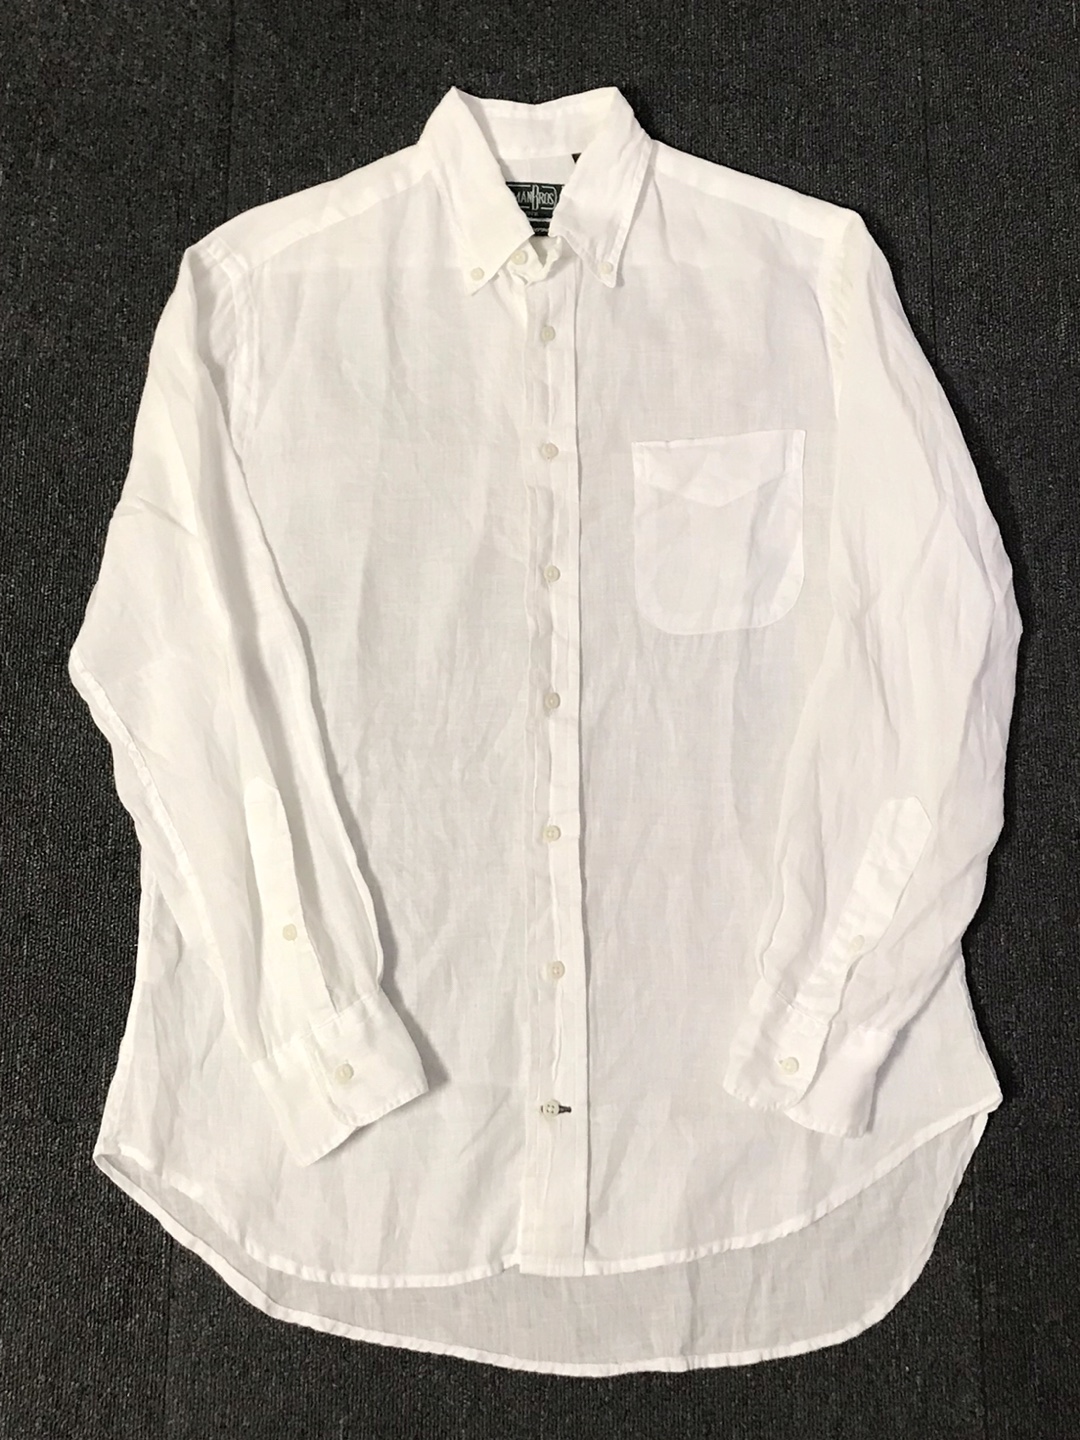 gitmanbros linen bd shirt 40th anniversary USA made (M size, ~103 추천)